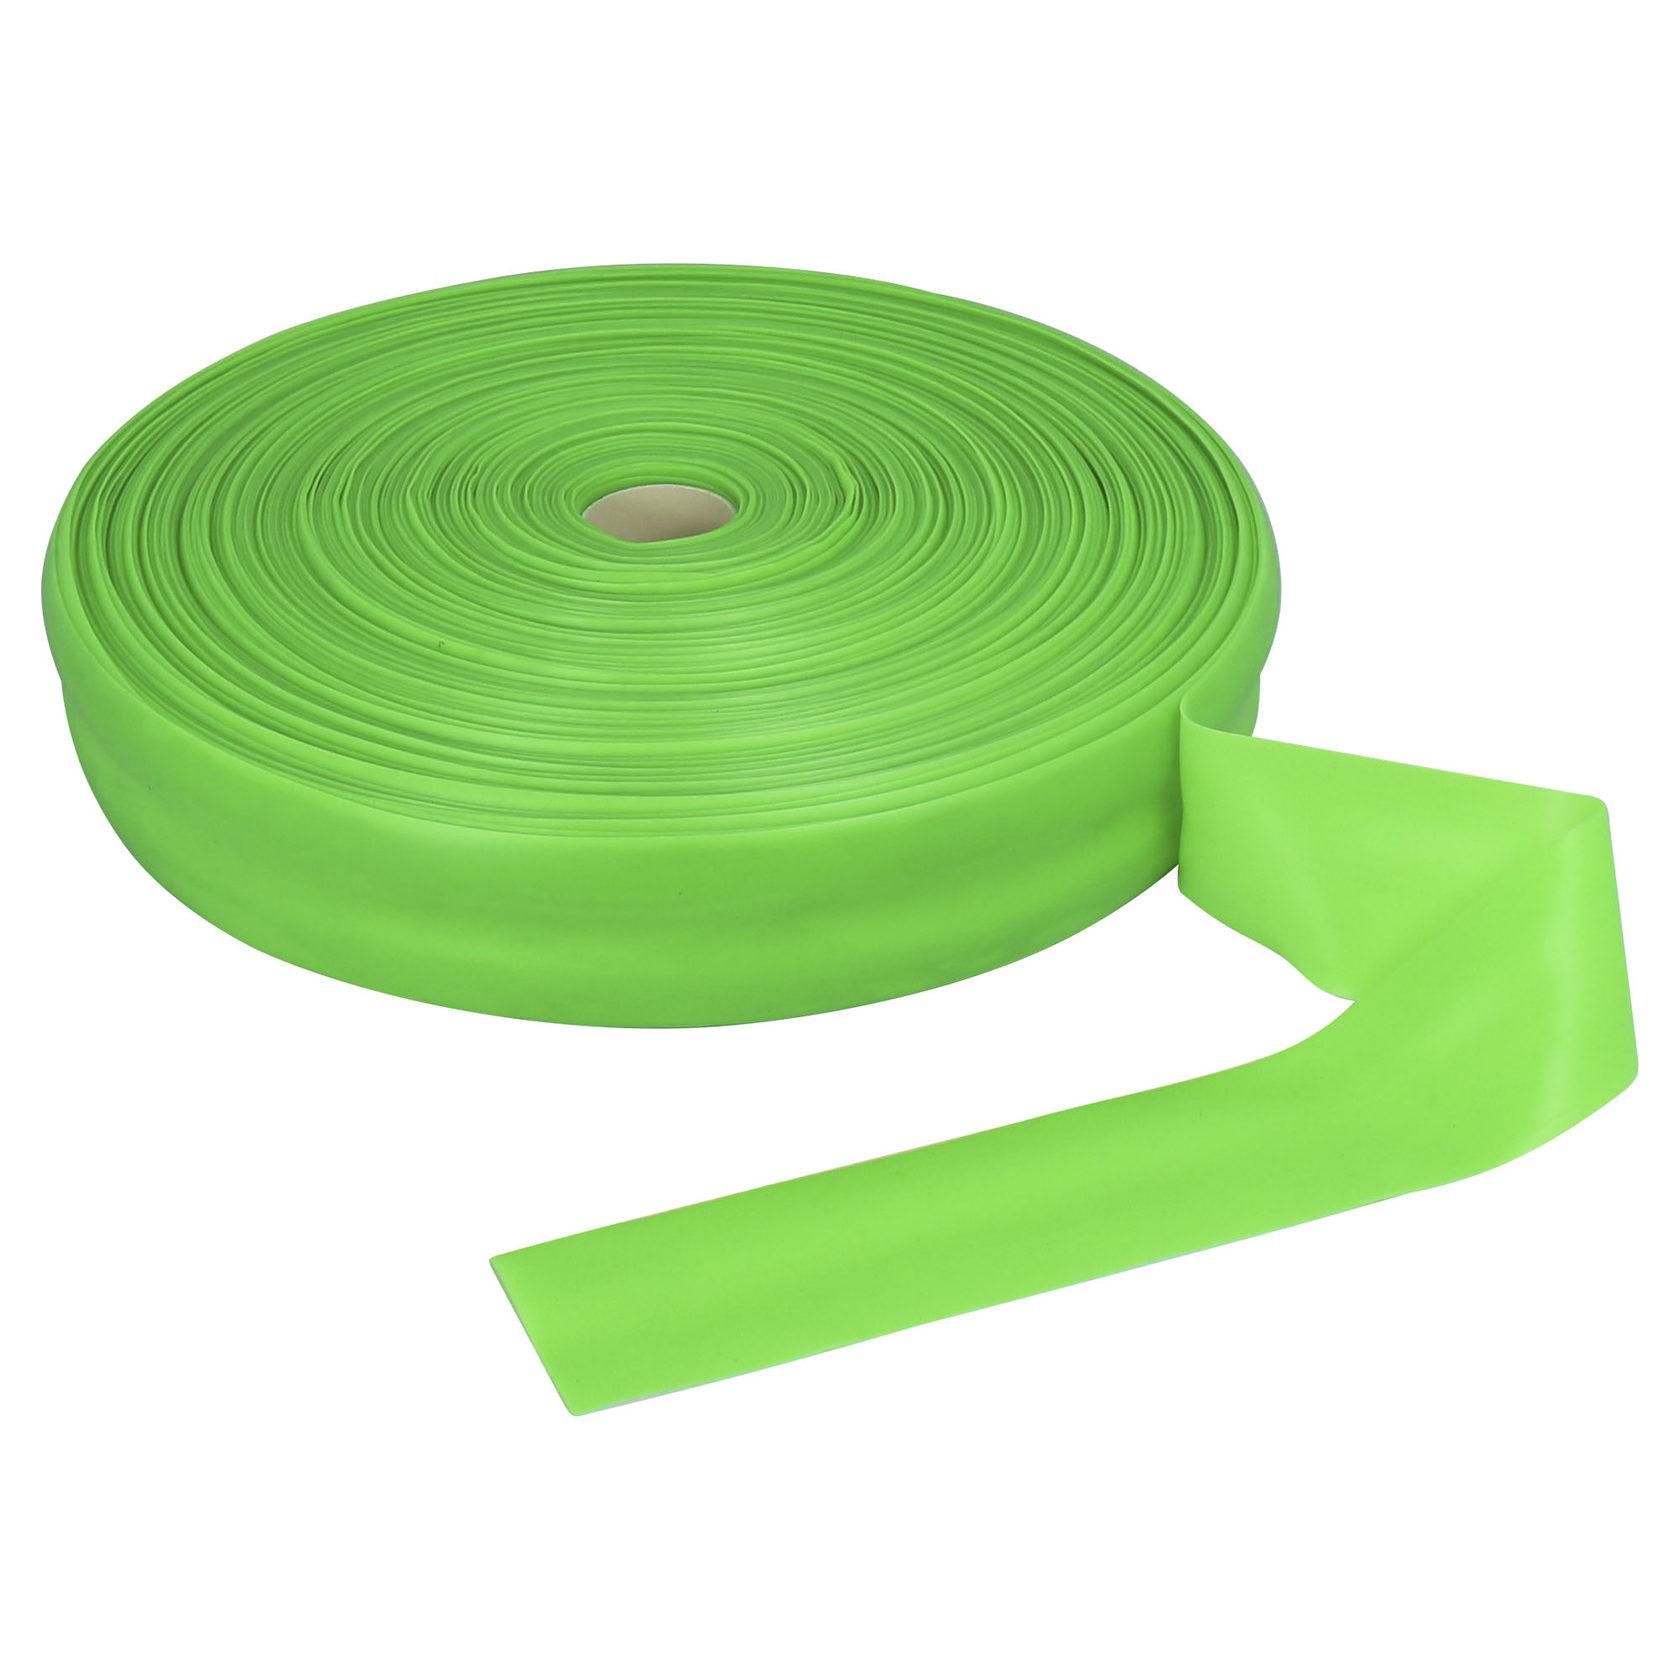 Жгут эспандер спортивный (лента) ширина 70 мм, диаметр 1,5 мм, Espado, цвет зелёный